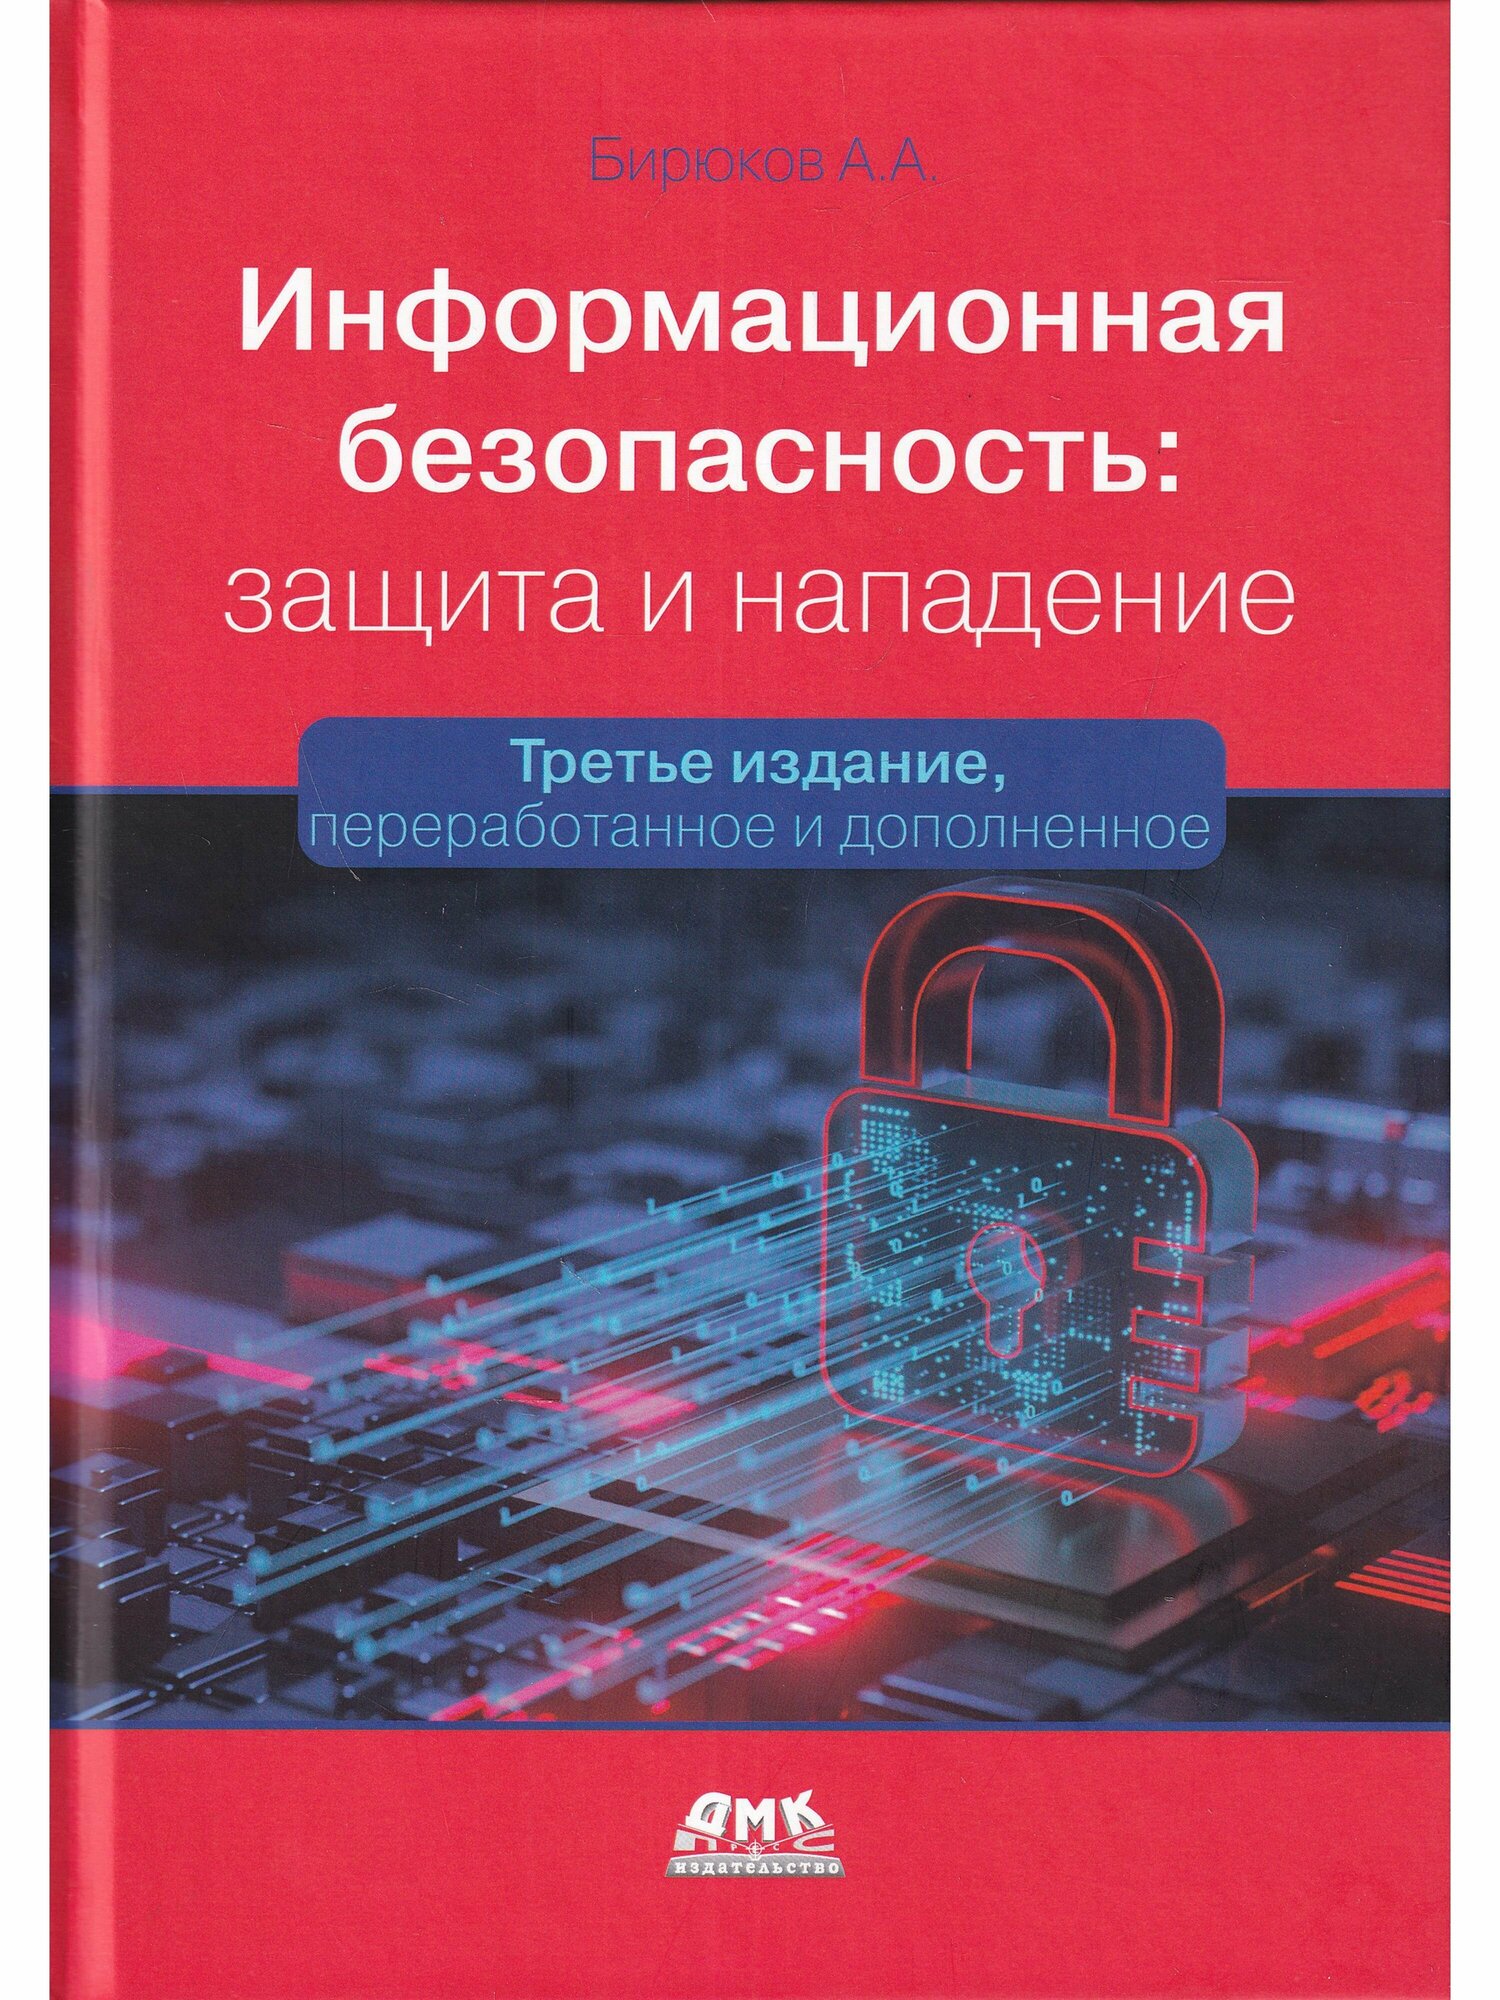 Книга: Бирюков А. А. "Информационная безопасность: защита и нападение. 3-е изд."